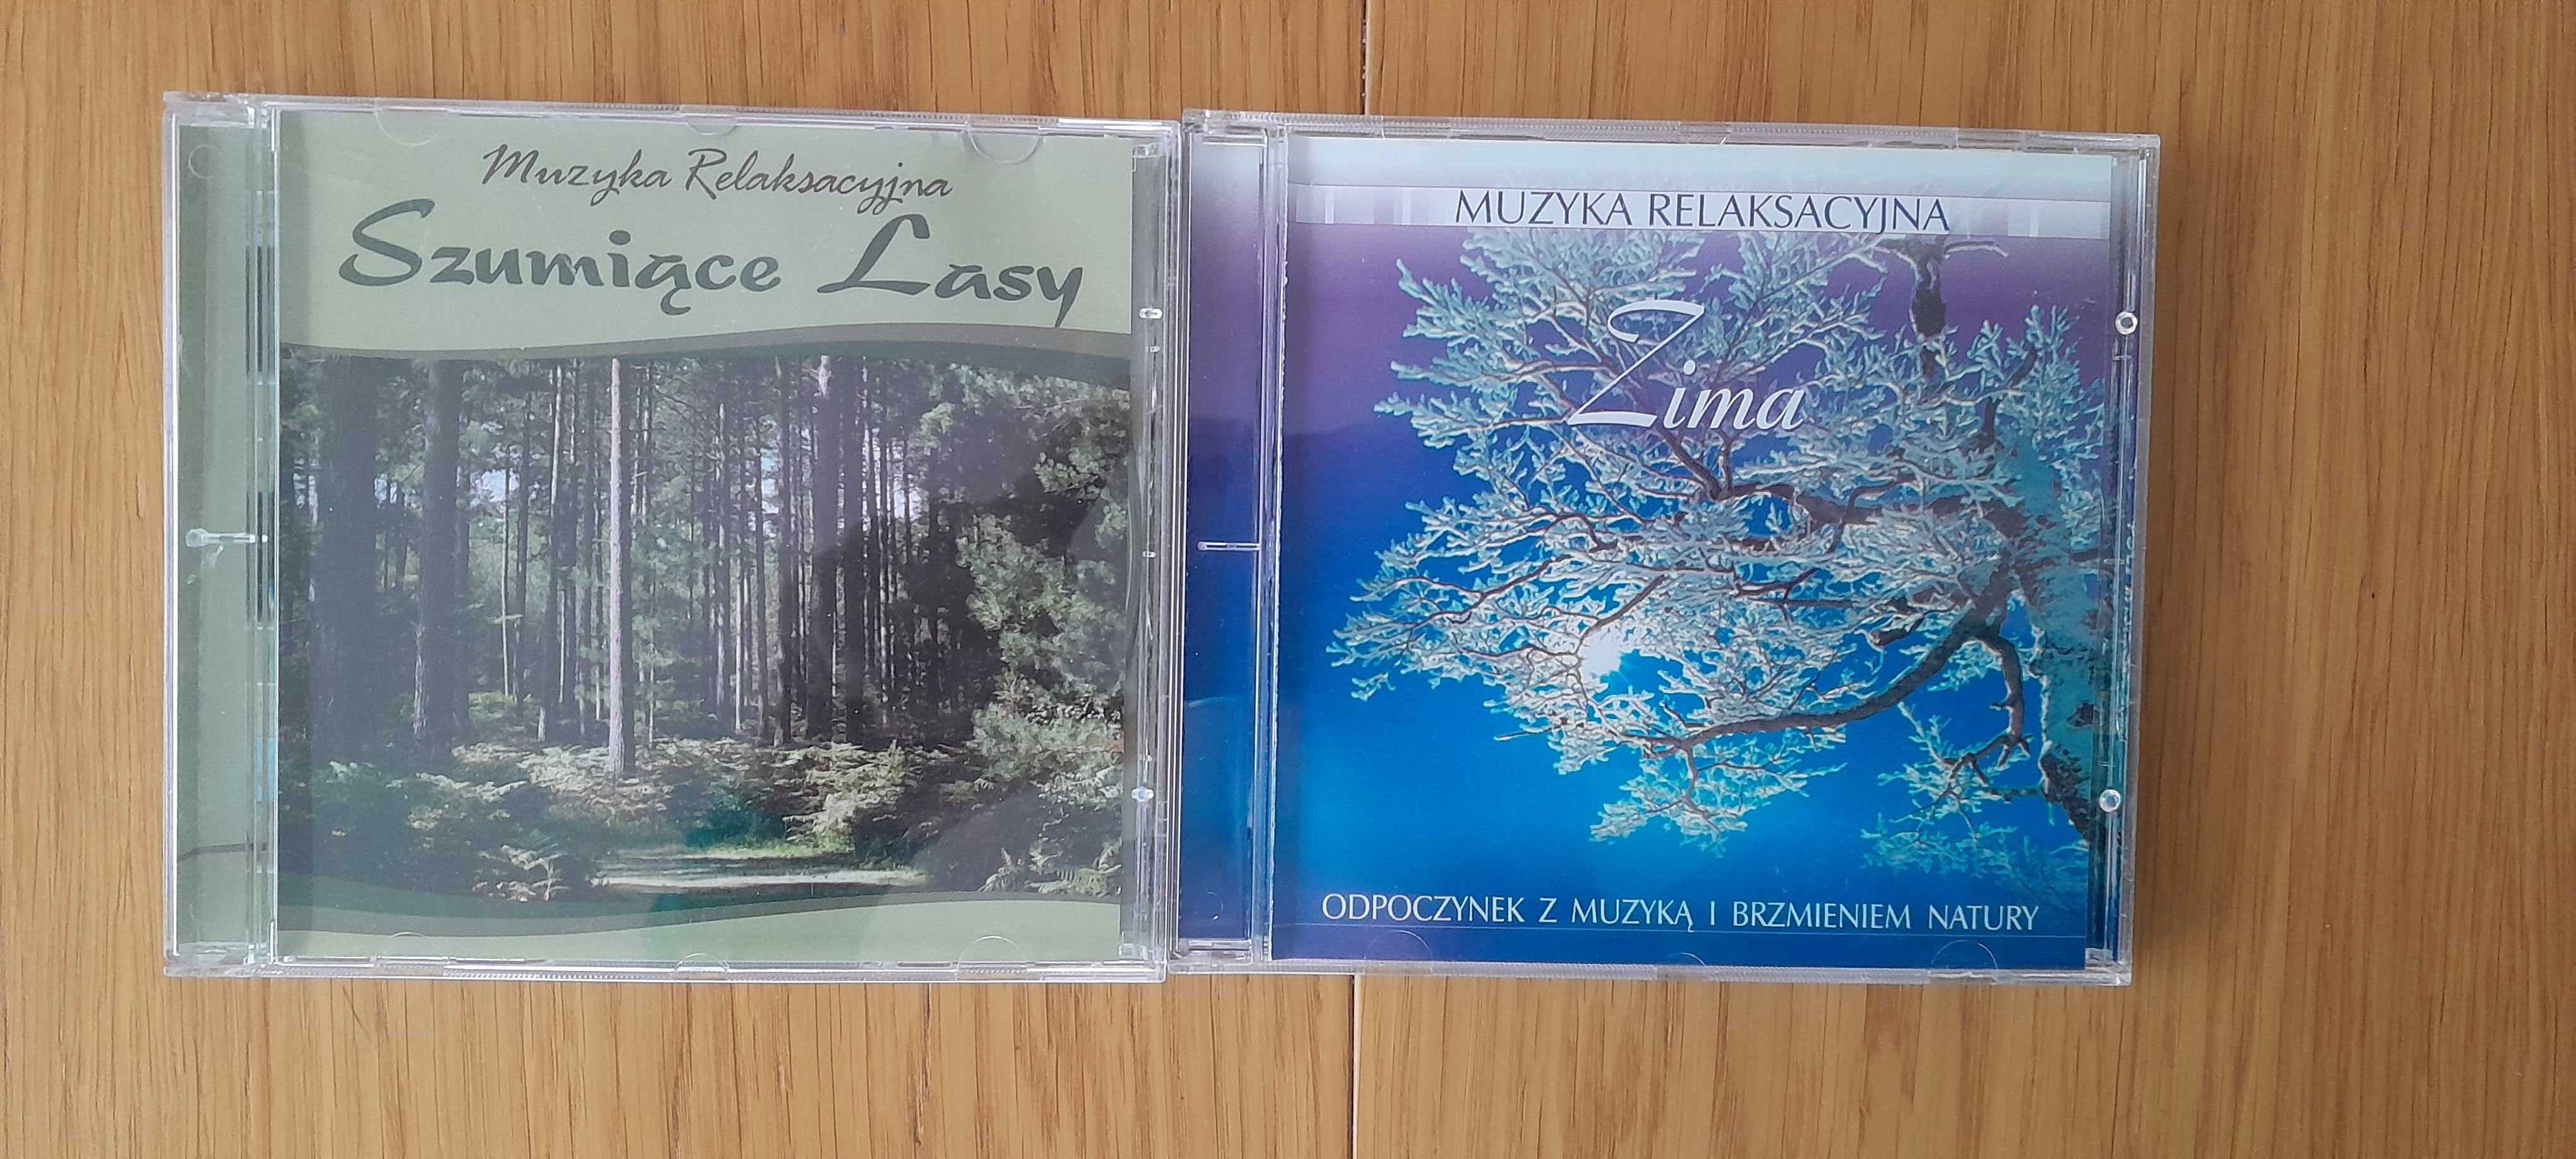 Muzyka relaksacyjna Szumiące Lasy, Zima 2 płyty CD